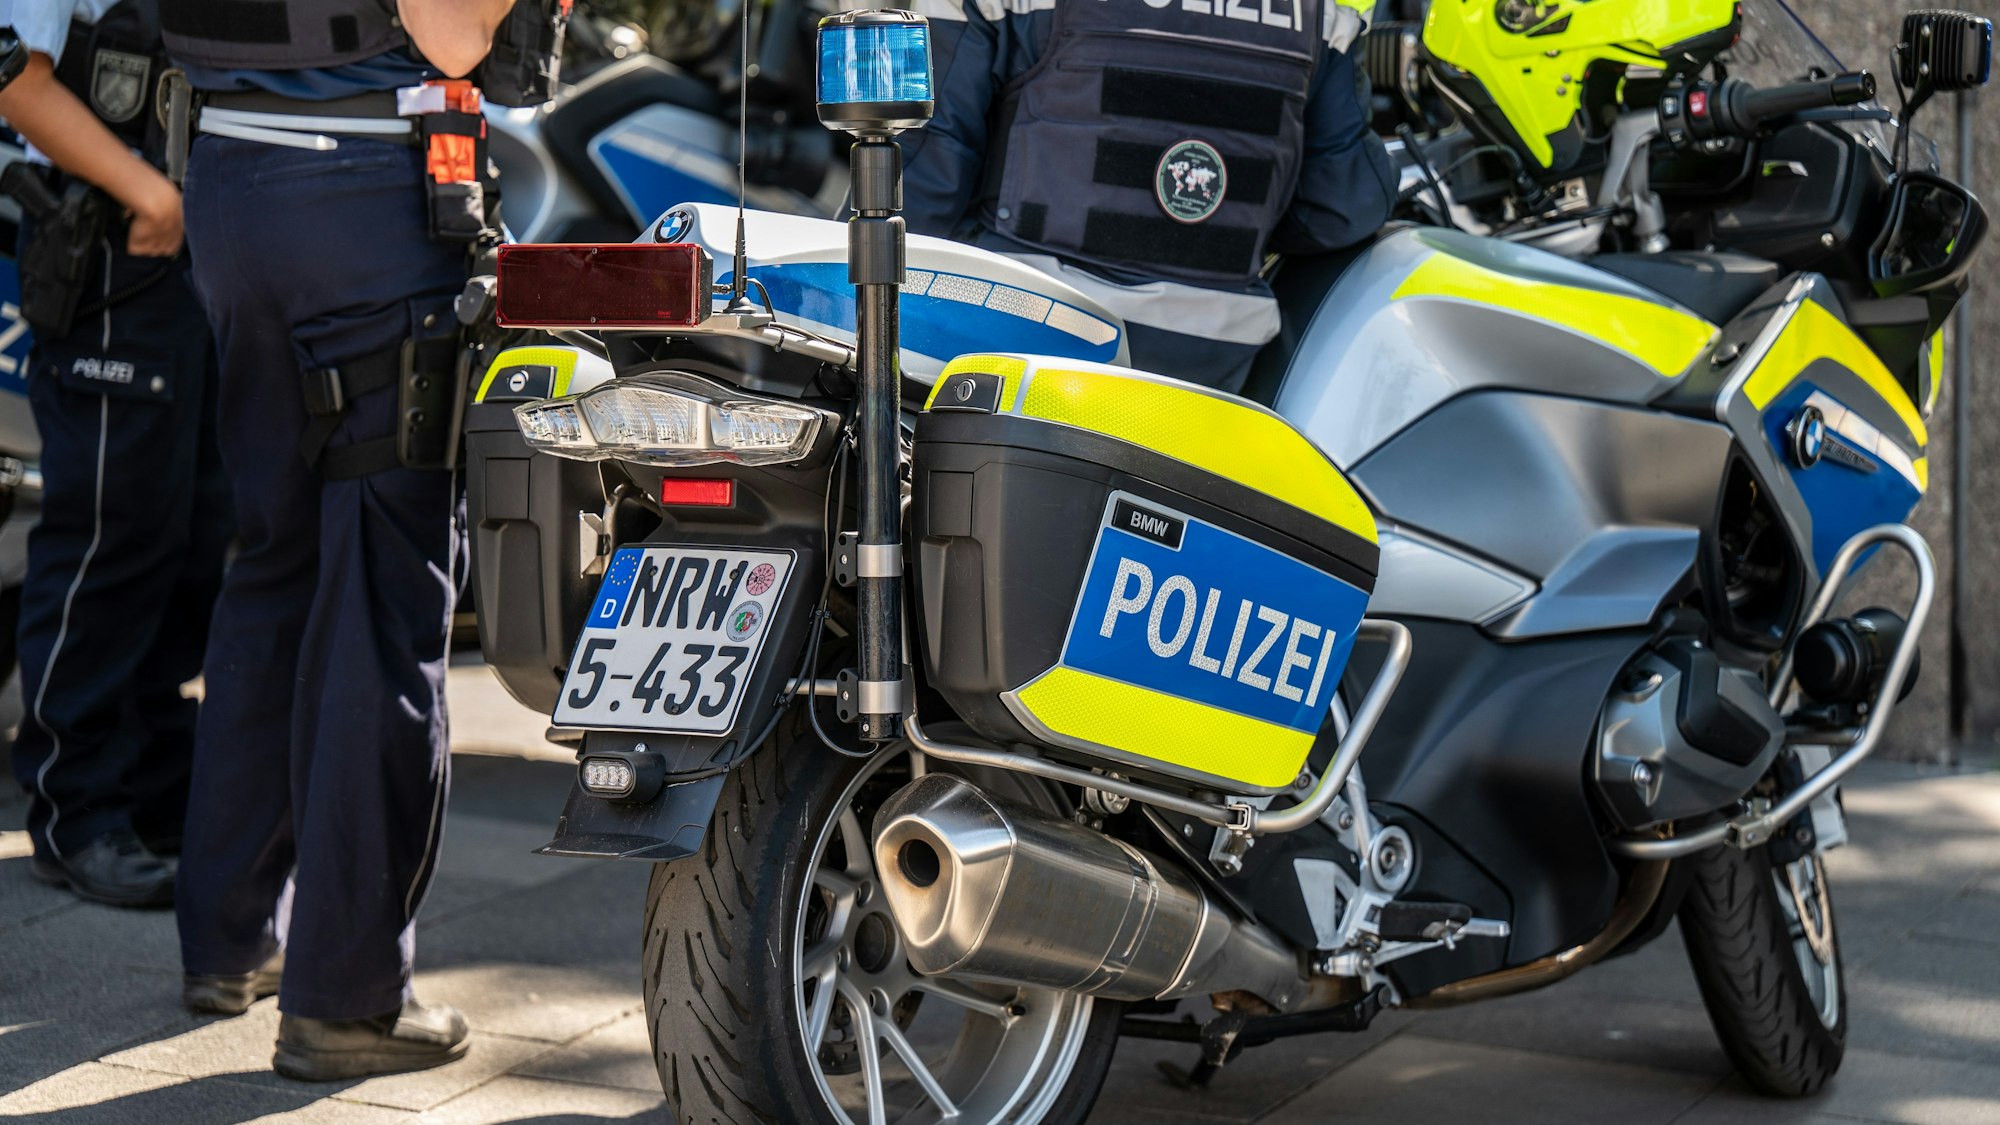 Das Bild zeigt ein Polizeimotorrad.